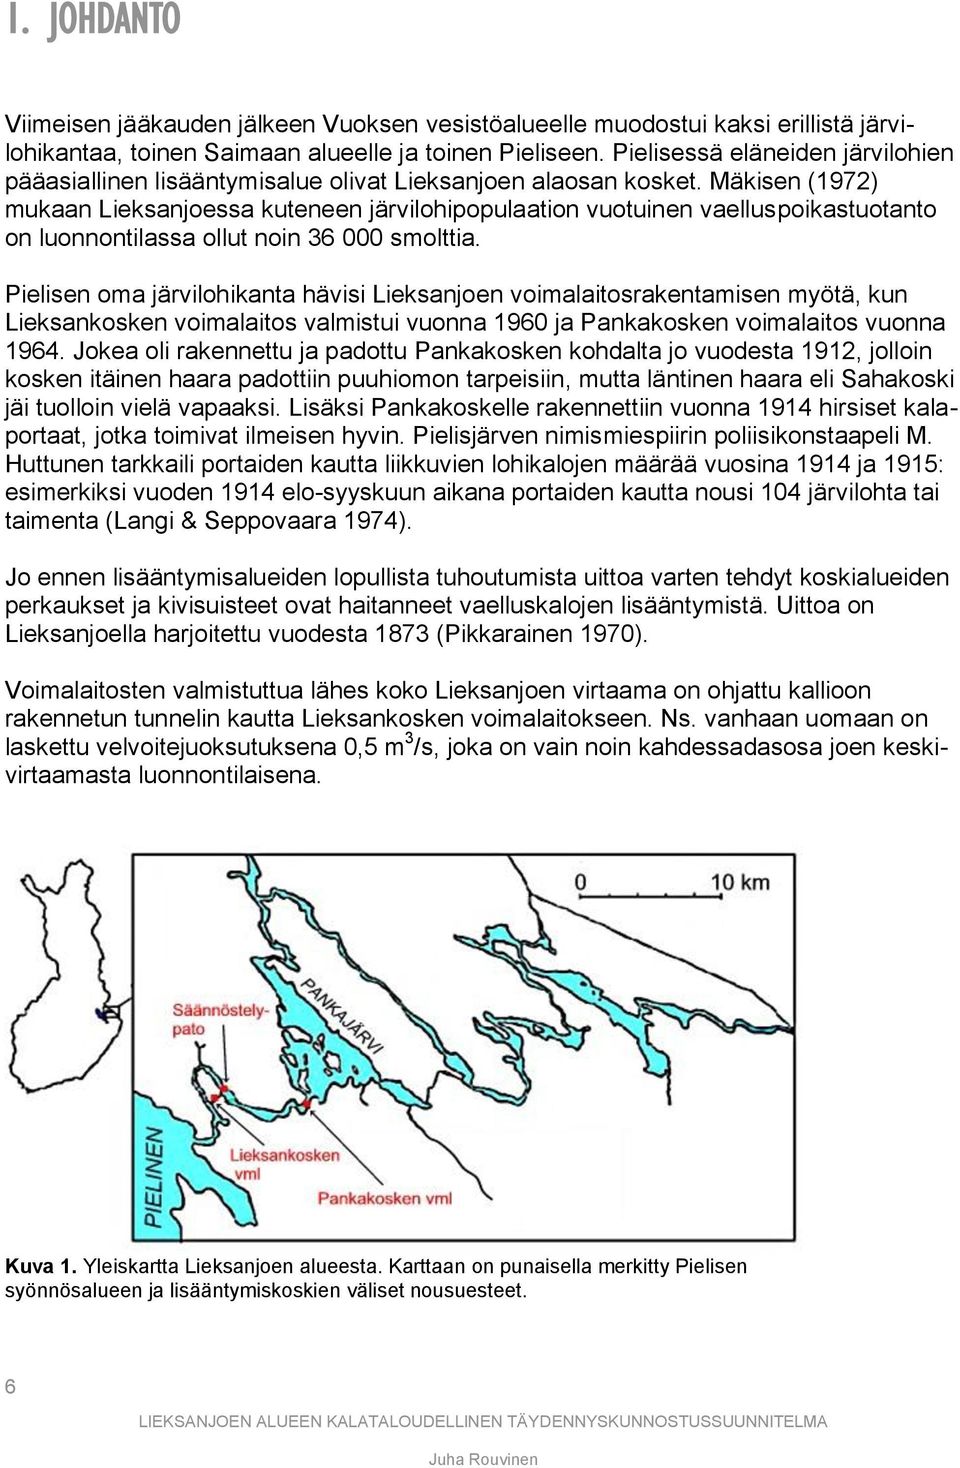 Mäkisen (1972) mukaan Lieksanjoessa kuteneen järvilohipopulaation vuotuinen vaelluspoikastuotanto on luonnontilassa ollut noin 36 000 smolttia.